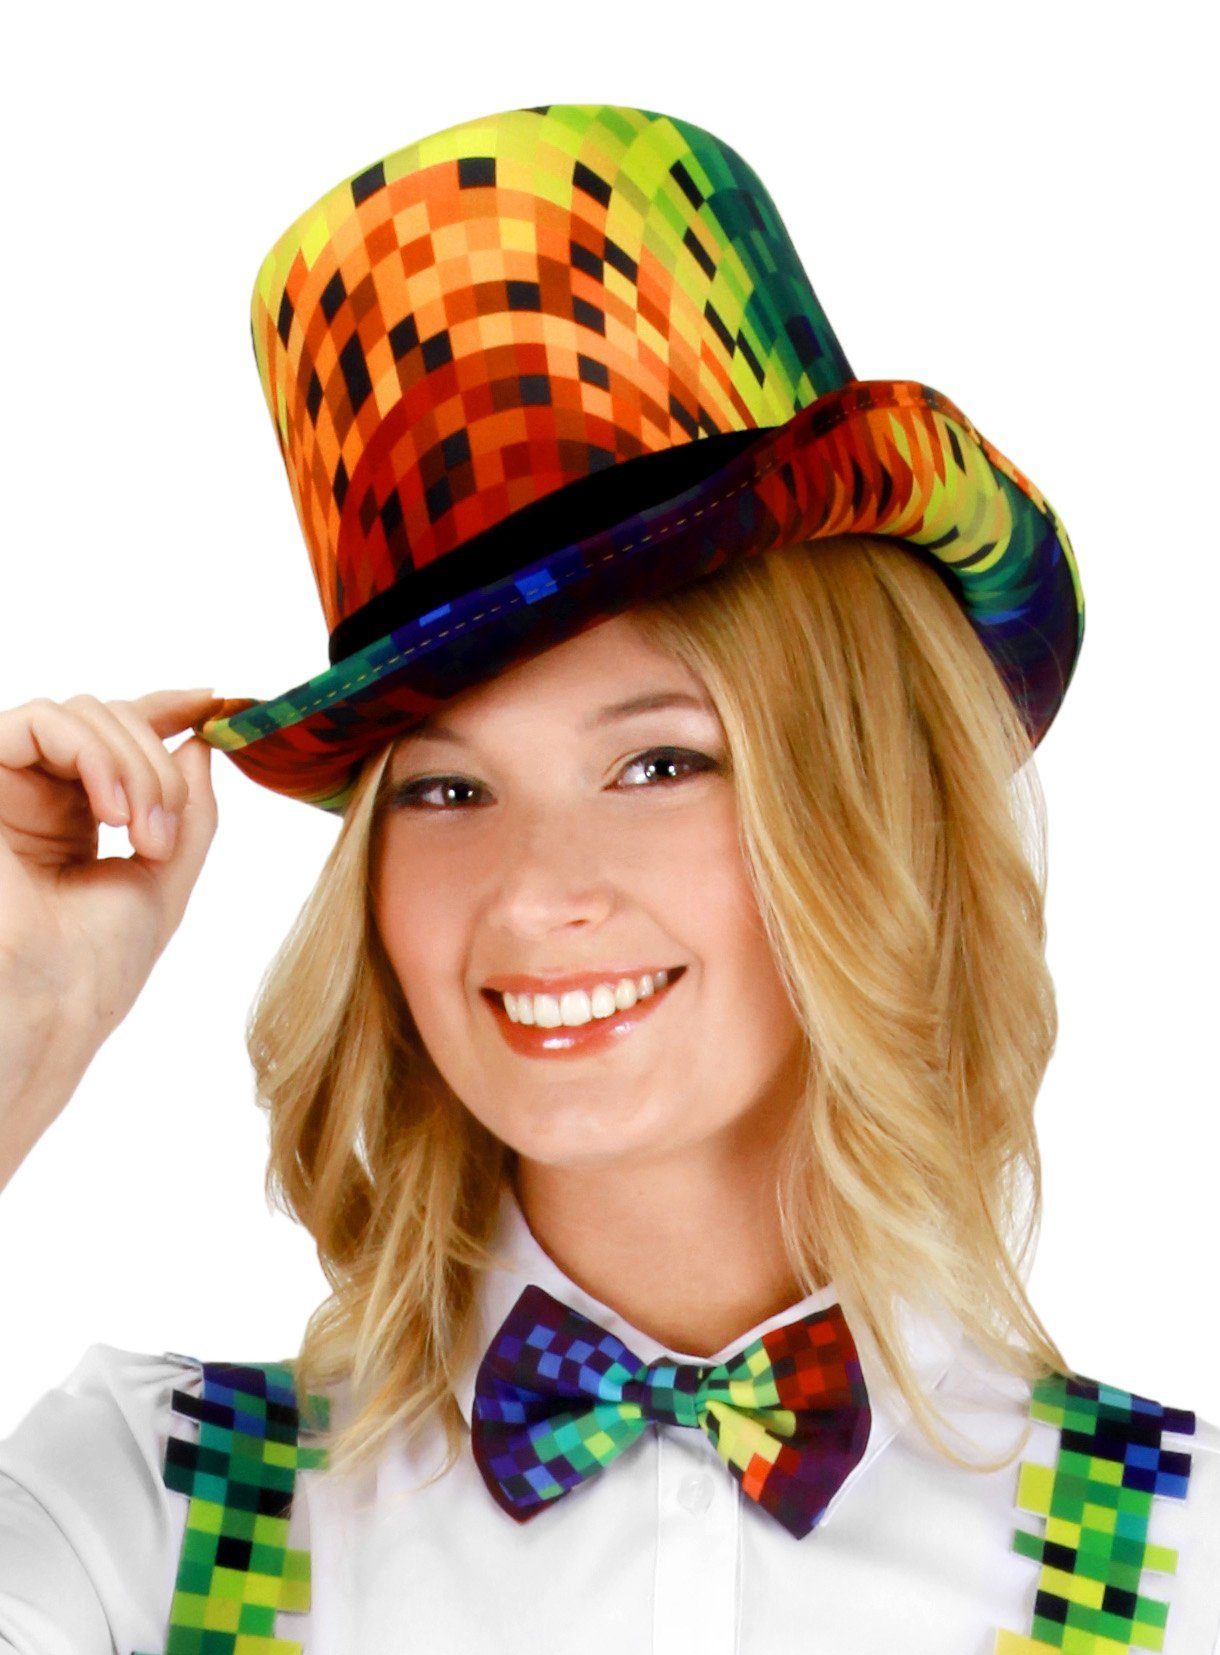 Elope Kostüm Regenbogen Pixel Hut, Lustiges Accessoire für Karneval und  Fasching im Pixel-Look